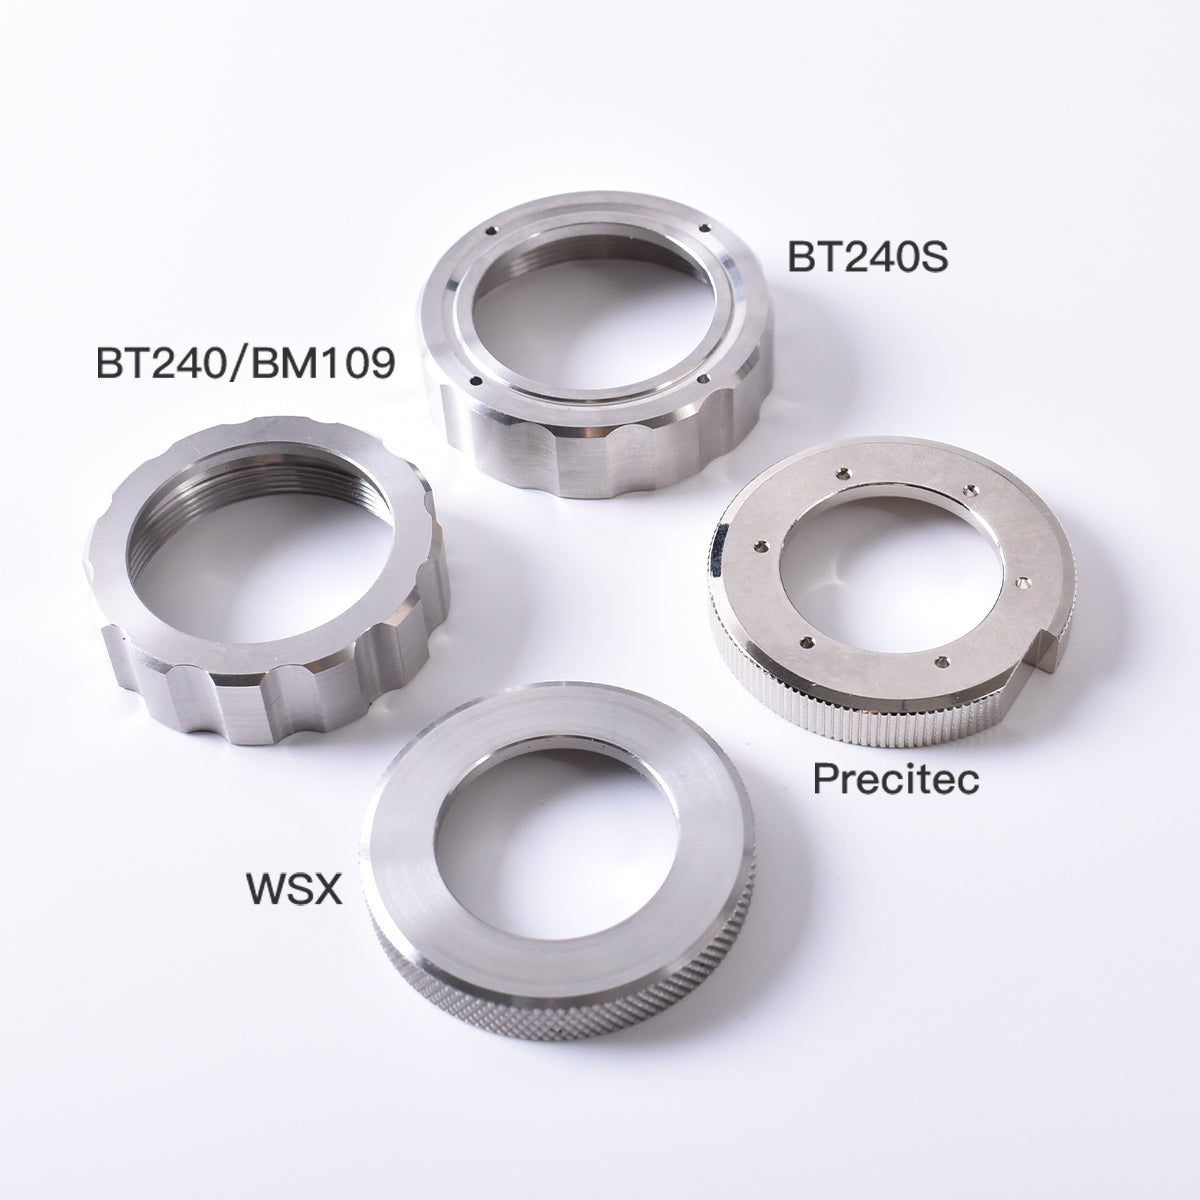 Startnow Laser Locking Ring Raytools BT240S Ceramic Lock Ring Fasten Nut